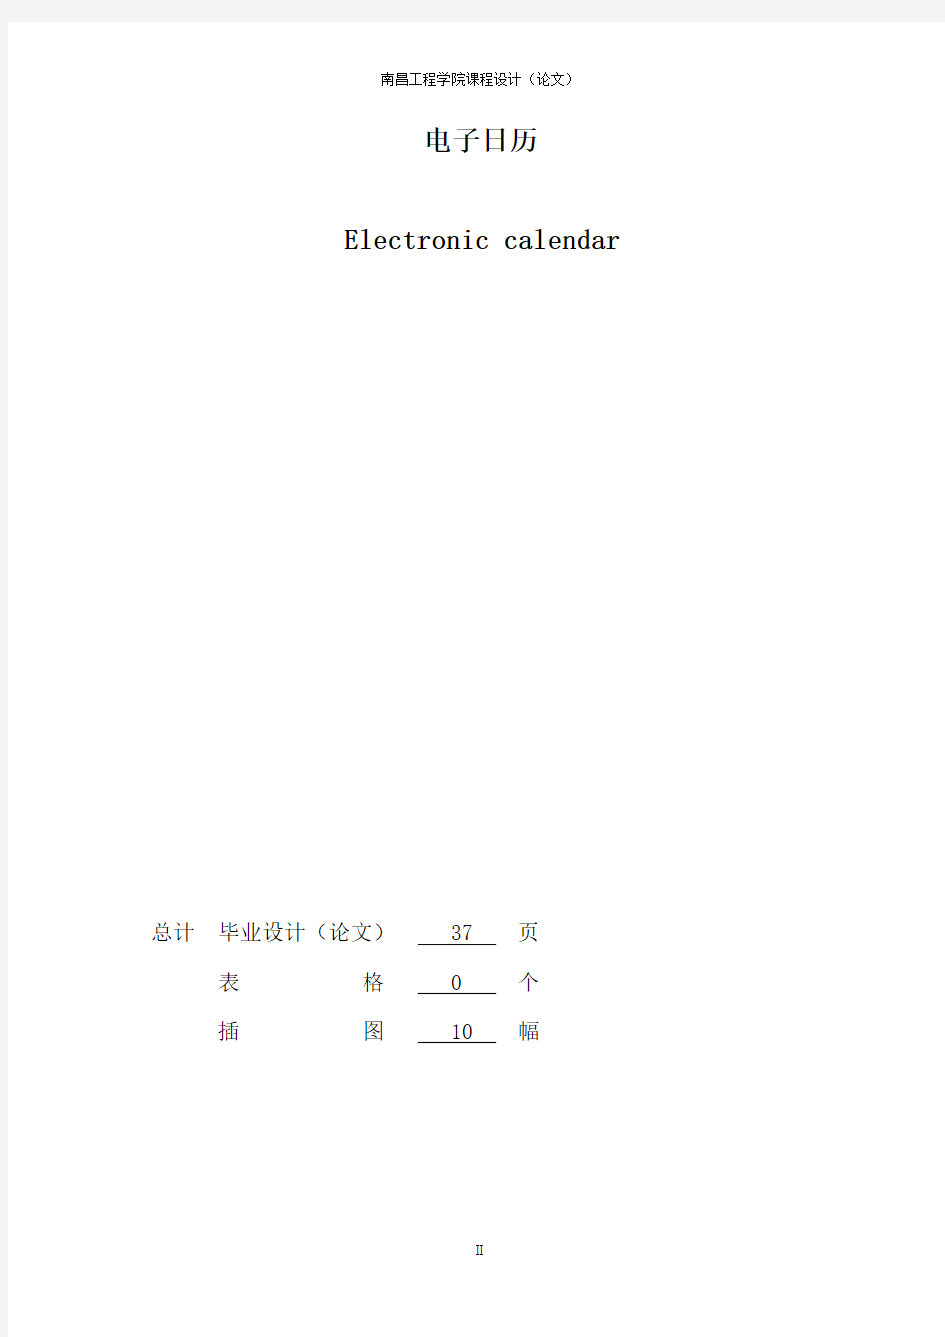 单片机控制电子日历